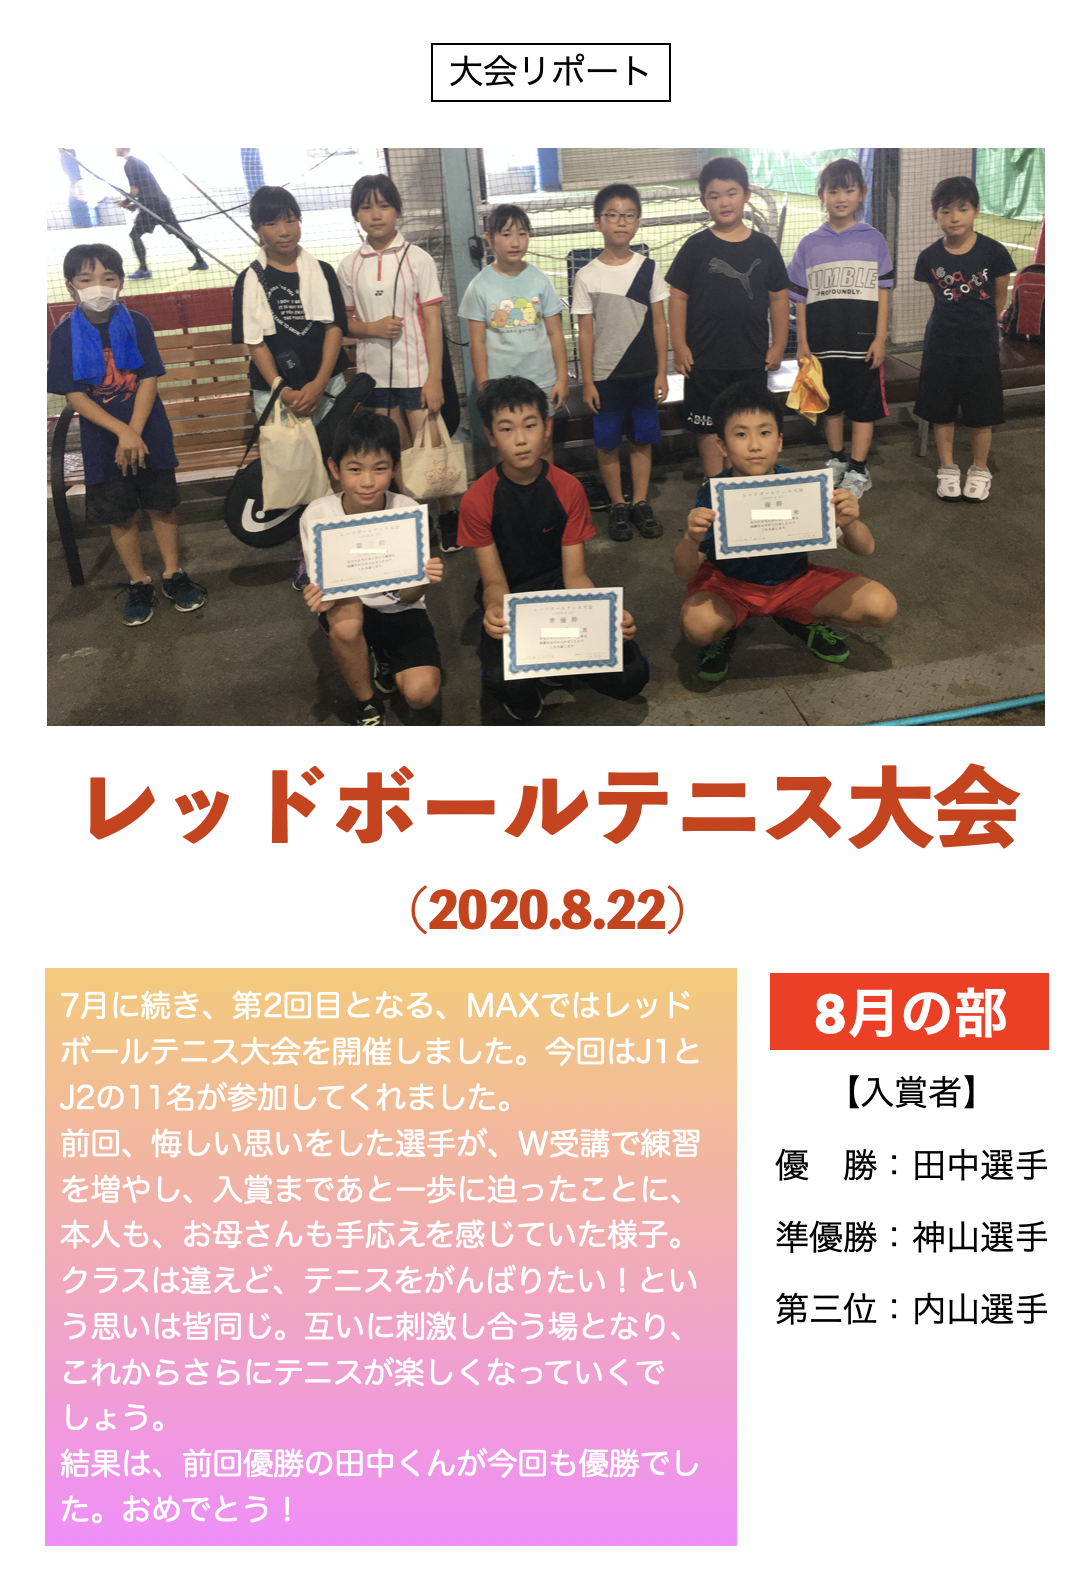 Maxインドアテニススクール 大会リポート 8 22 レッドボールテニス大会 Maxインドアテニススクール 長野県長野市